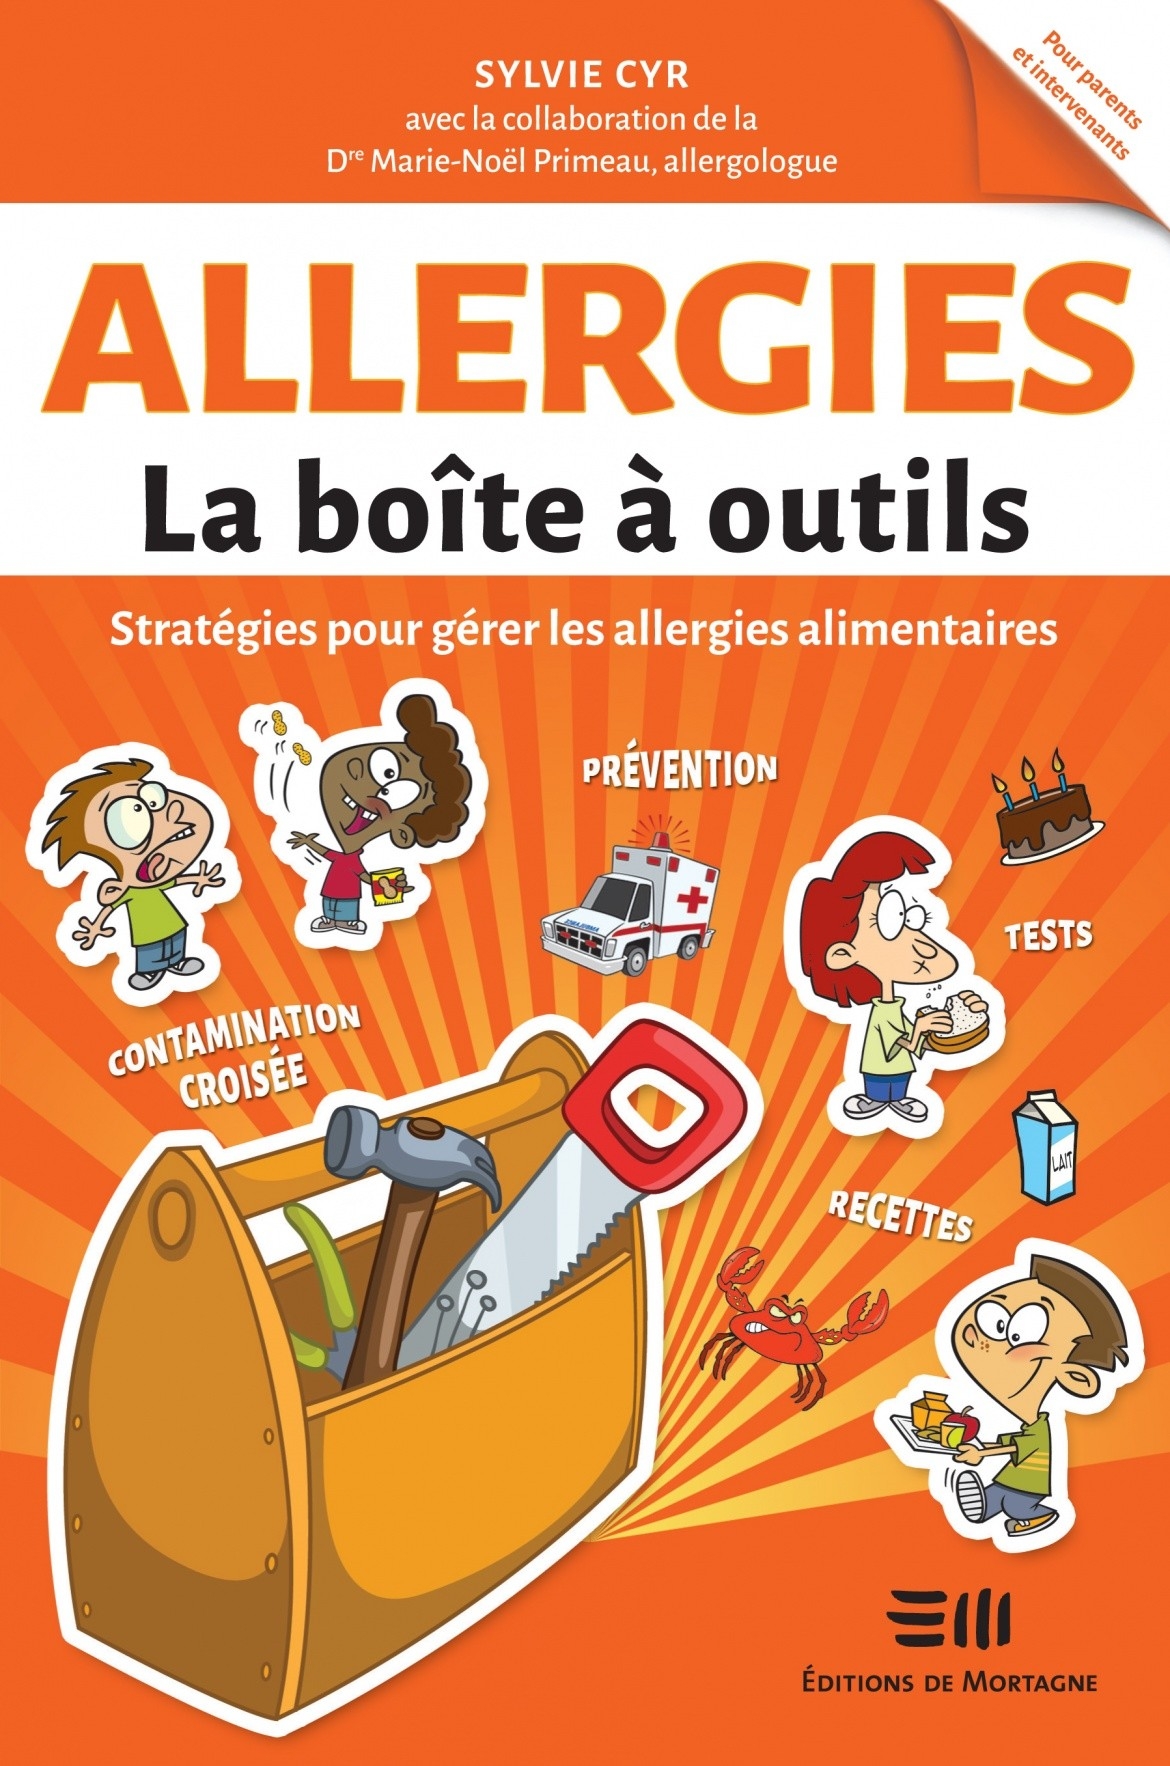 La boîte à outils - Allergies